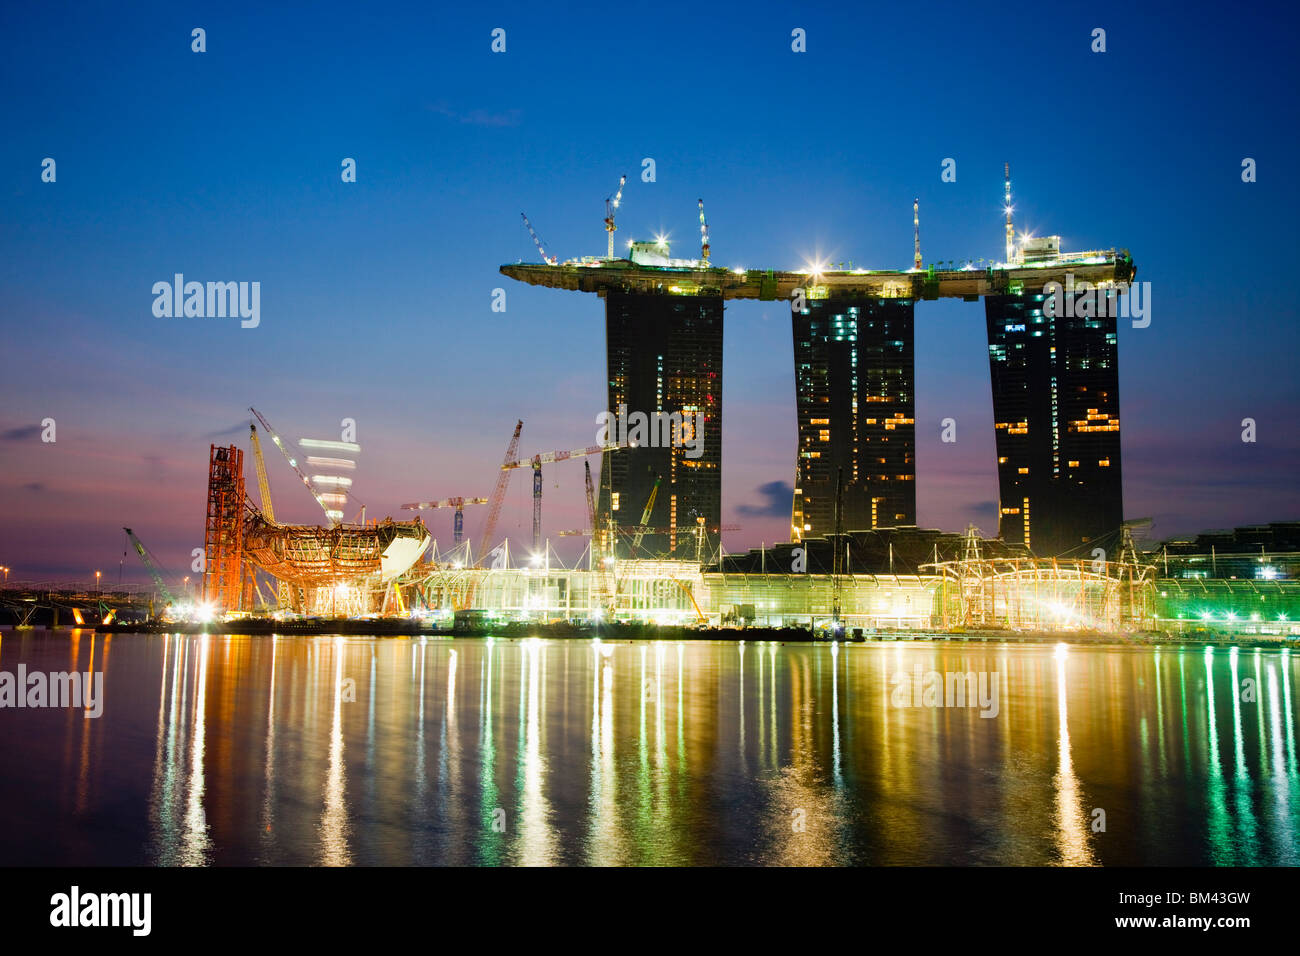 Il Marina Bay Sands Hotel e Casino in costruzione sulla Marina Bay waterfront, Singapore Foto Stock